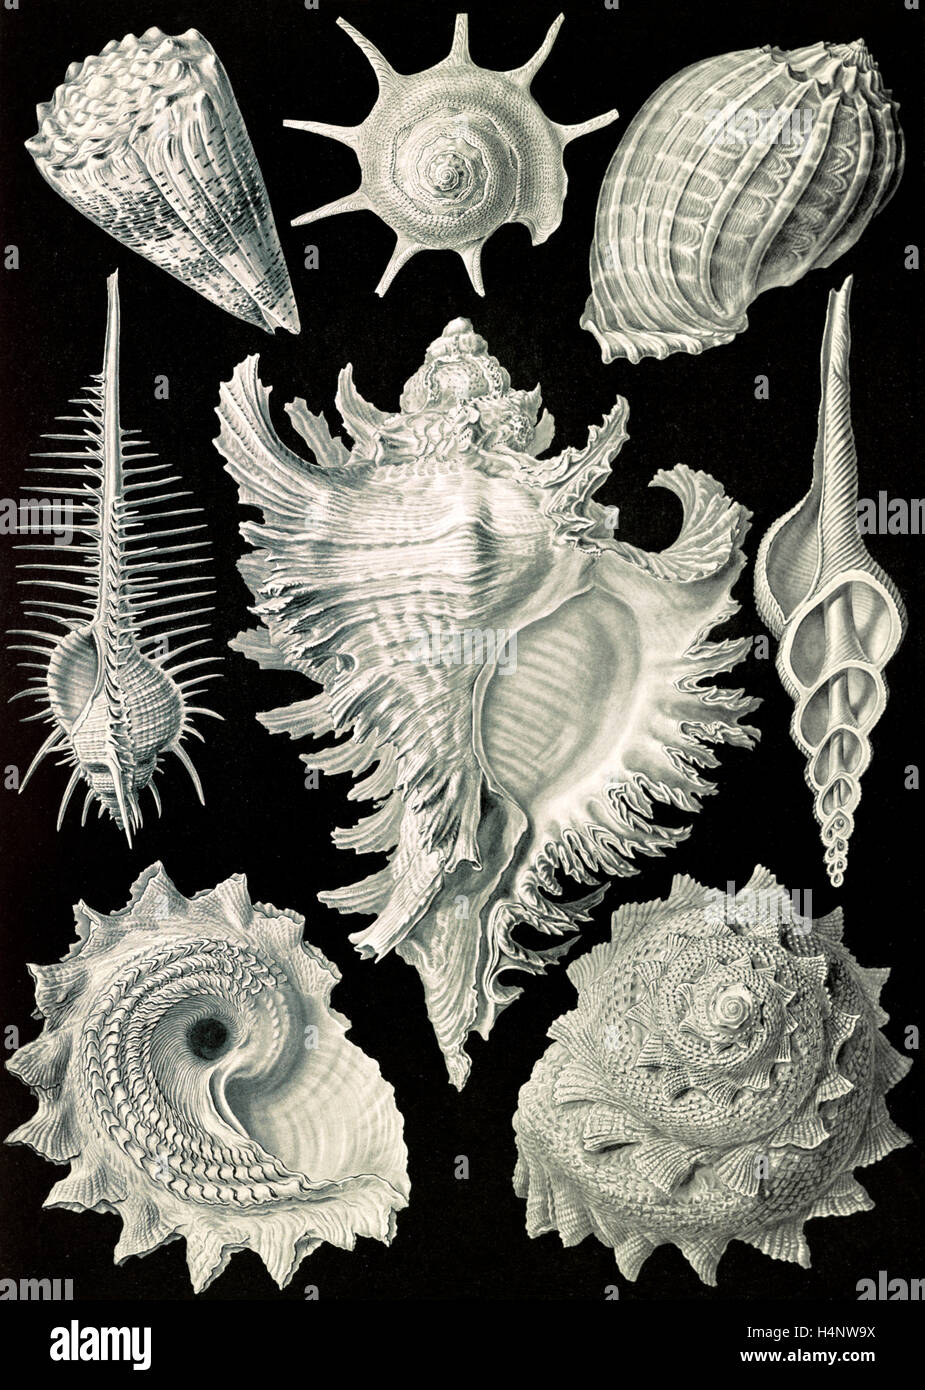 Illustrazione mostra acquatiche e terrestri di lumache. Prosobranchia. - Dorderkiemen-Schnecken, 1 stampa : photomechanical Foto Stock